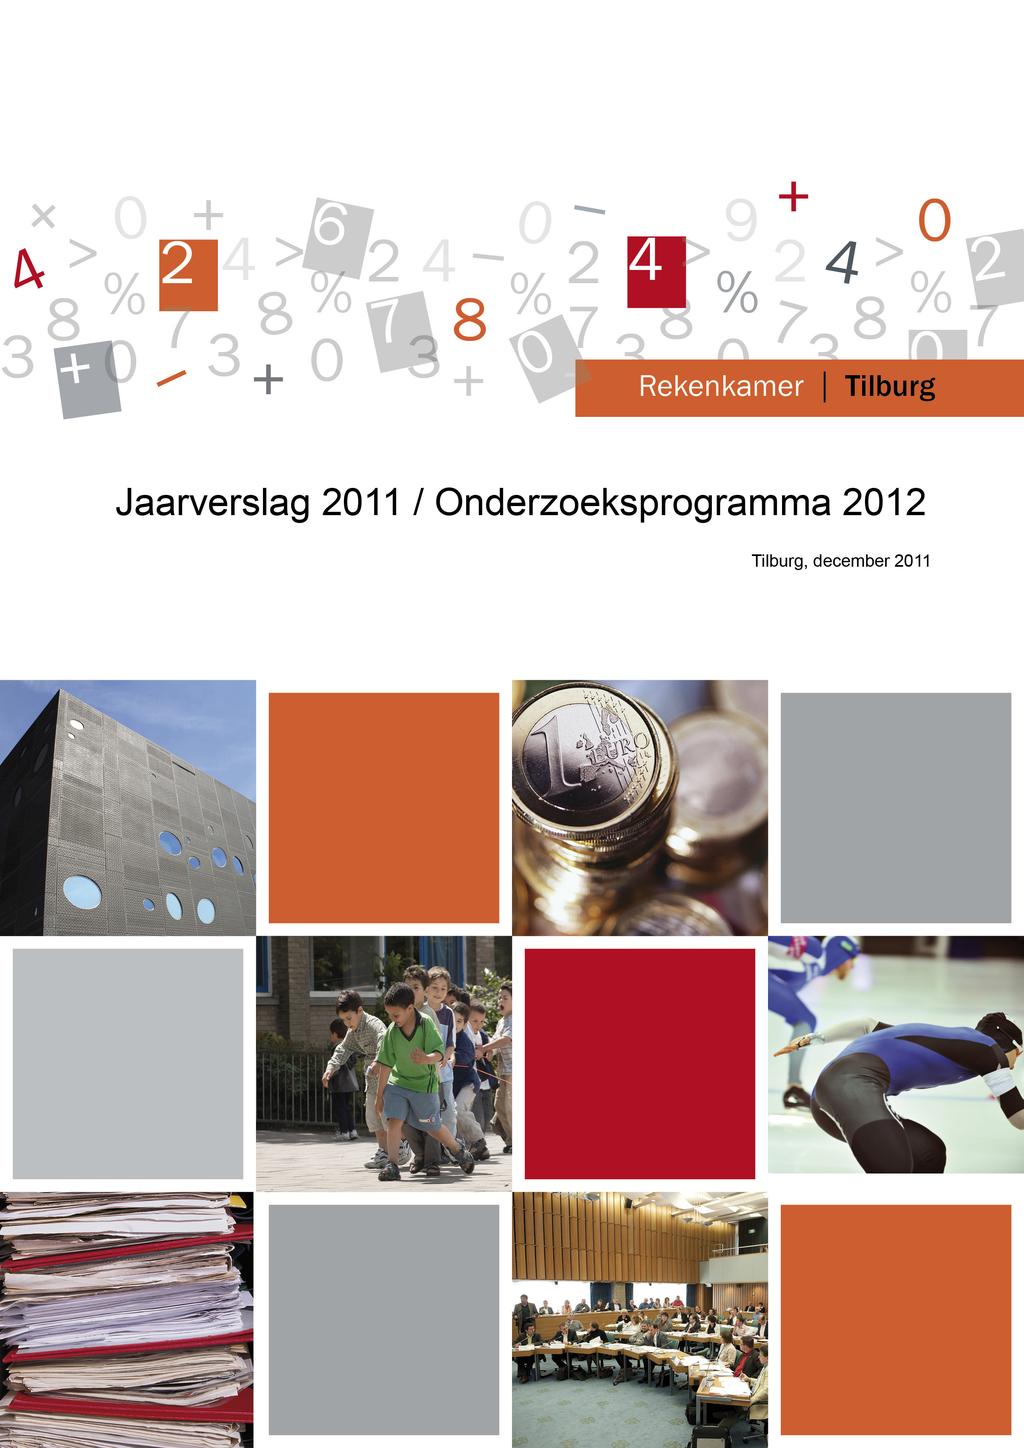 Jaarverslag 2012/Onderzoeksprogramma